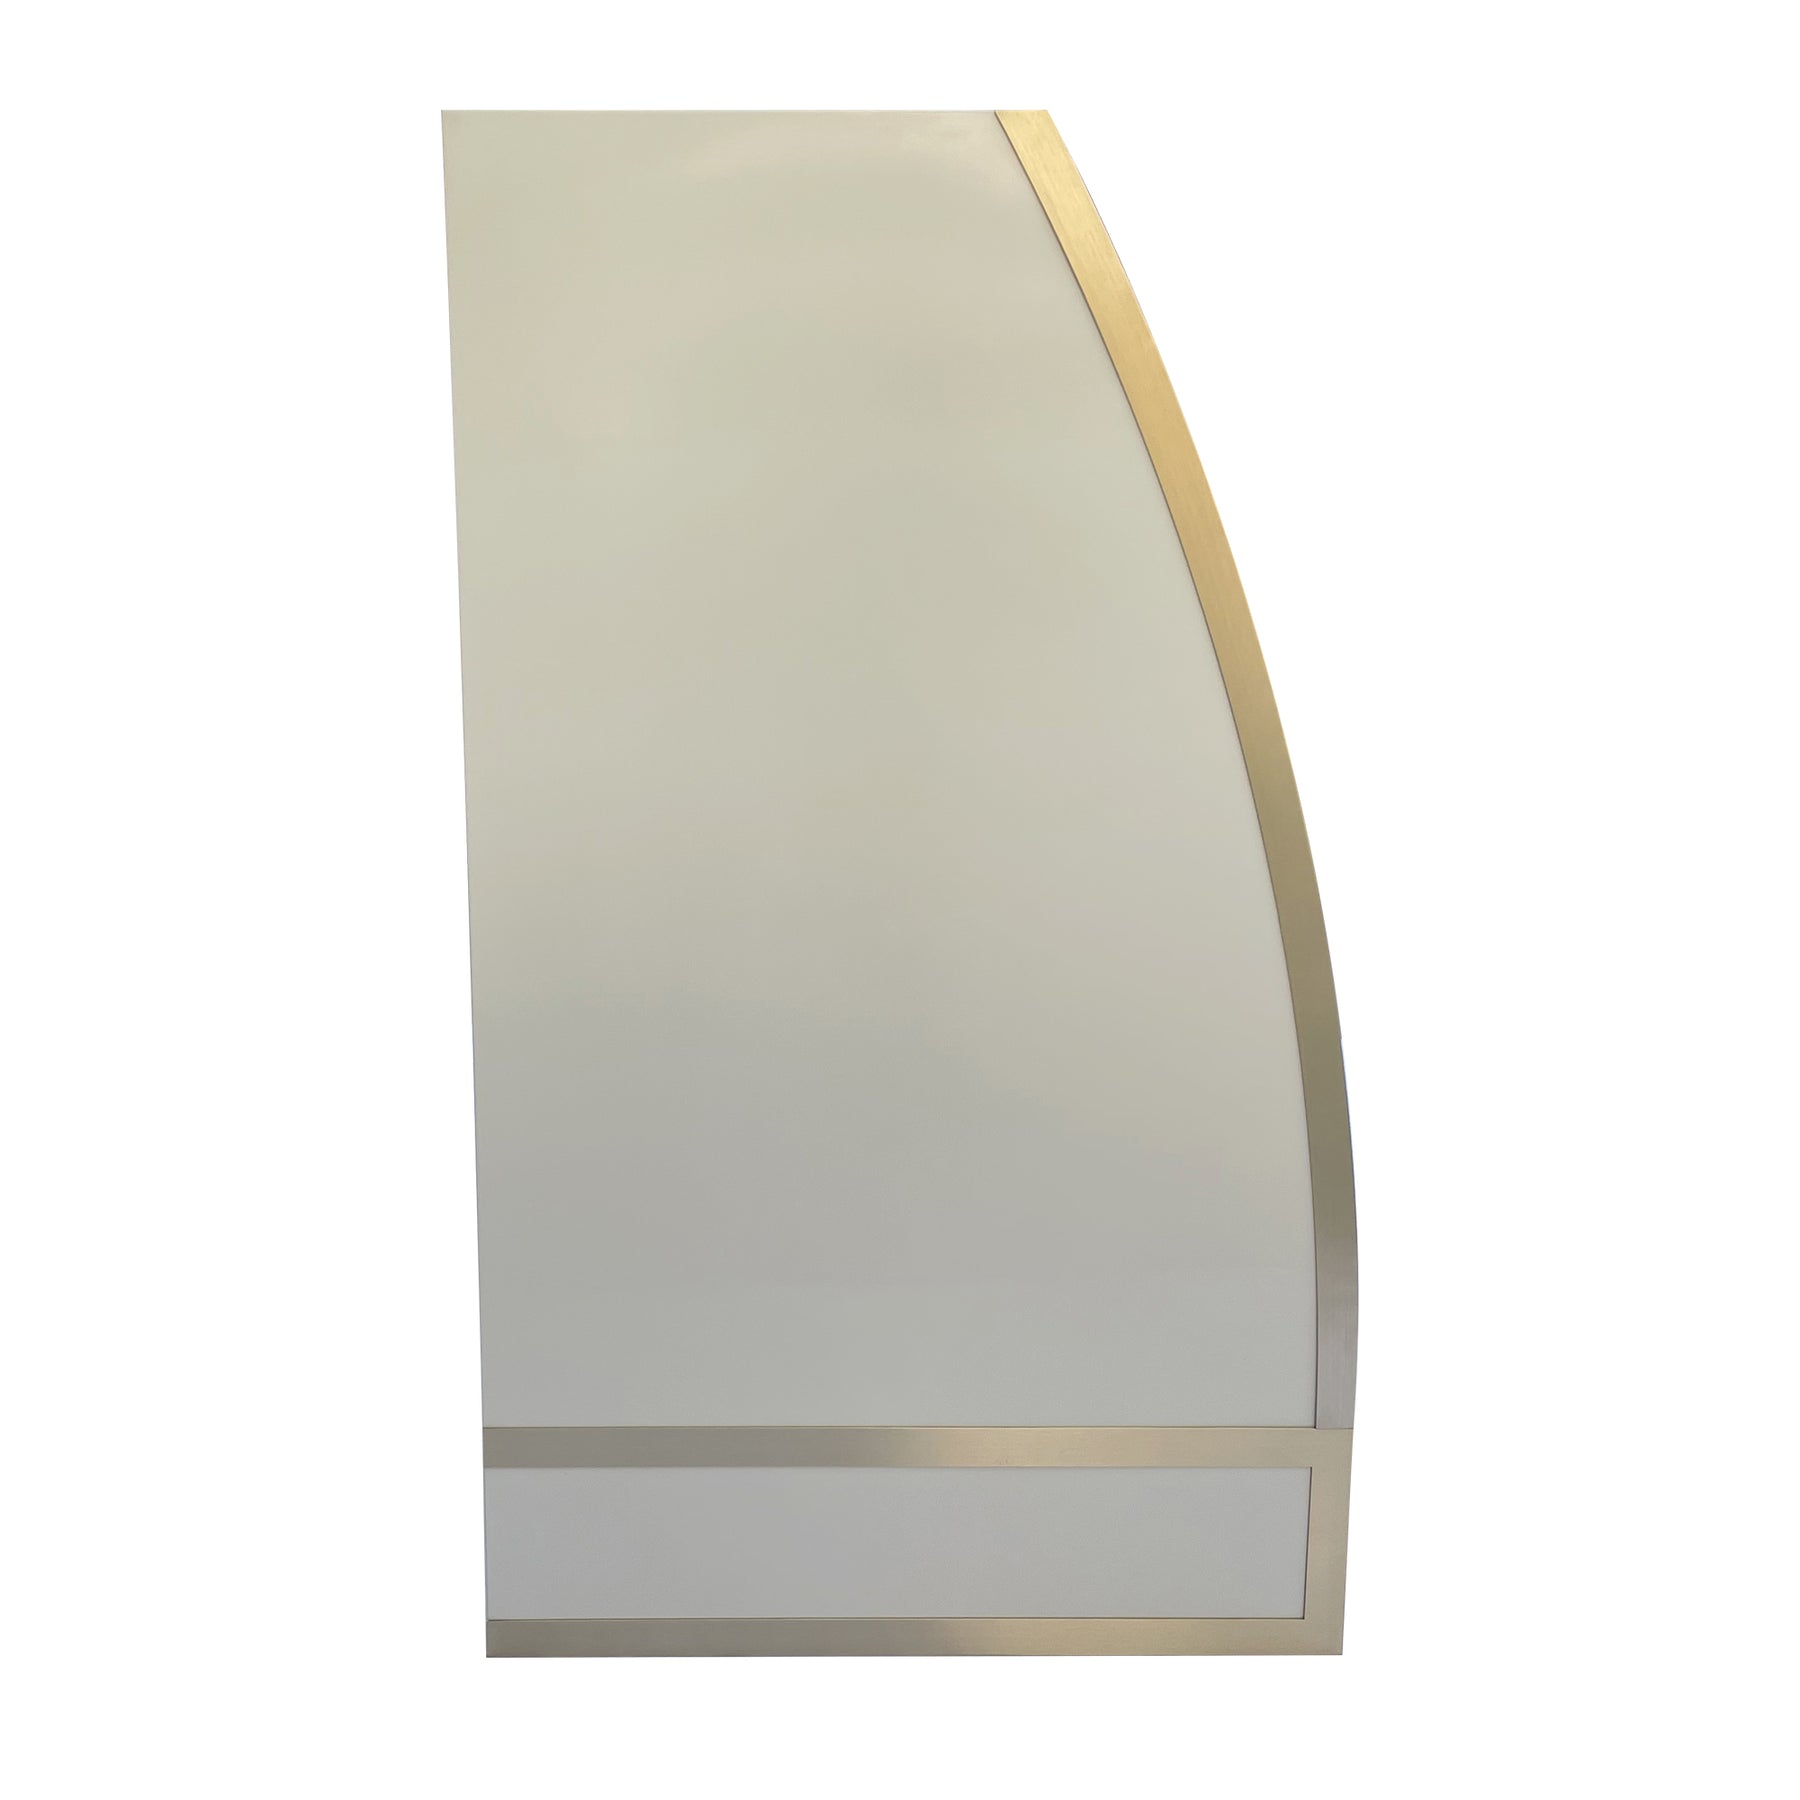 Fobest Barrel Design Custom White Stainless Steel Range Hood with Brass Trim FSS-46 - Fobest Appliance